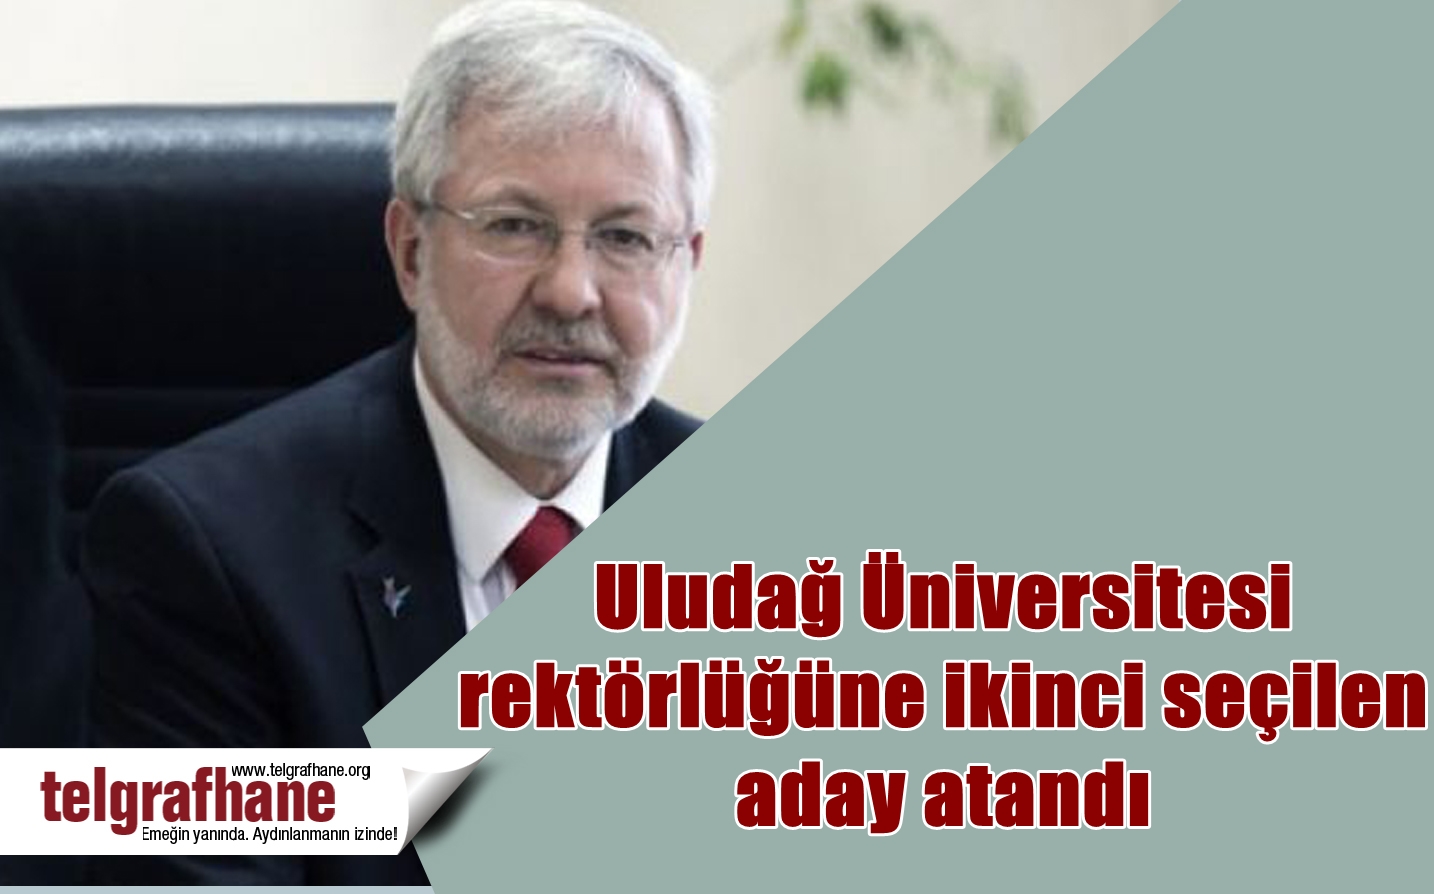 Uludağ Üniversitesi rektörlüğüne ikinci seçilen aday atandı